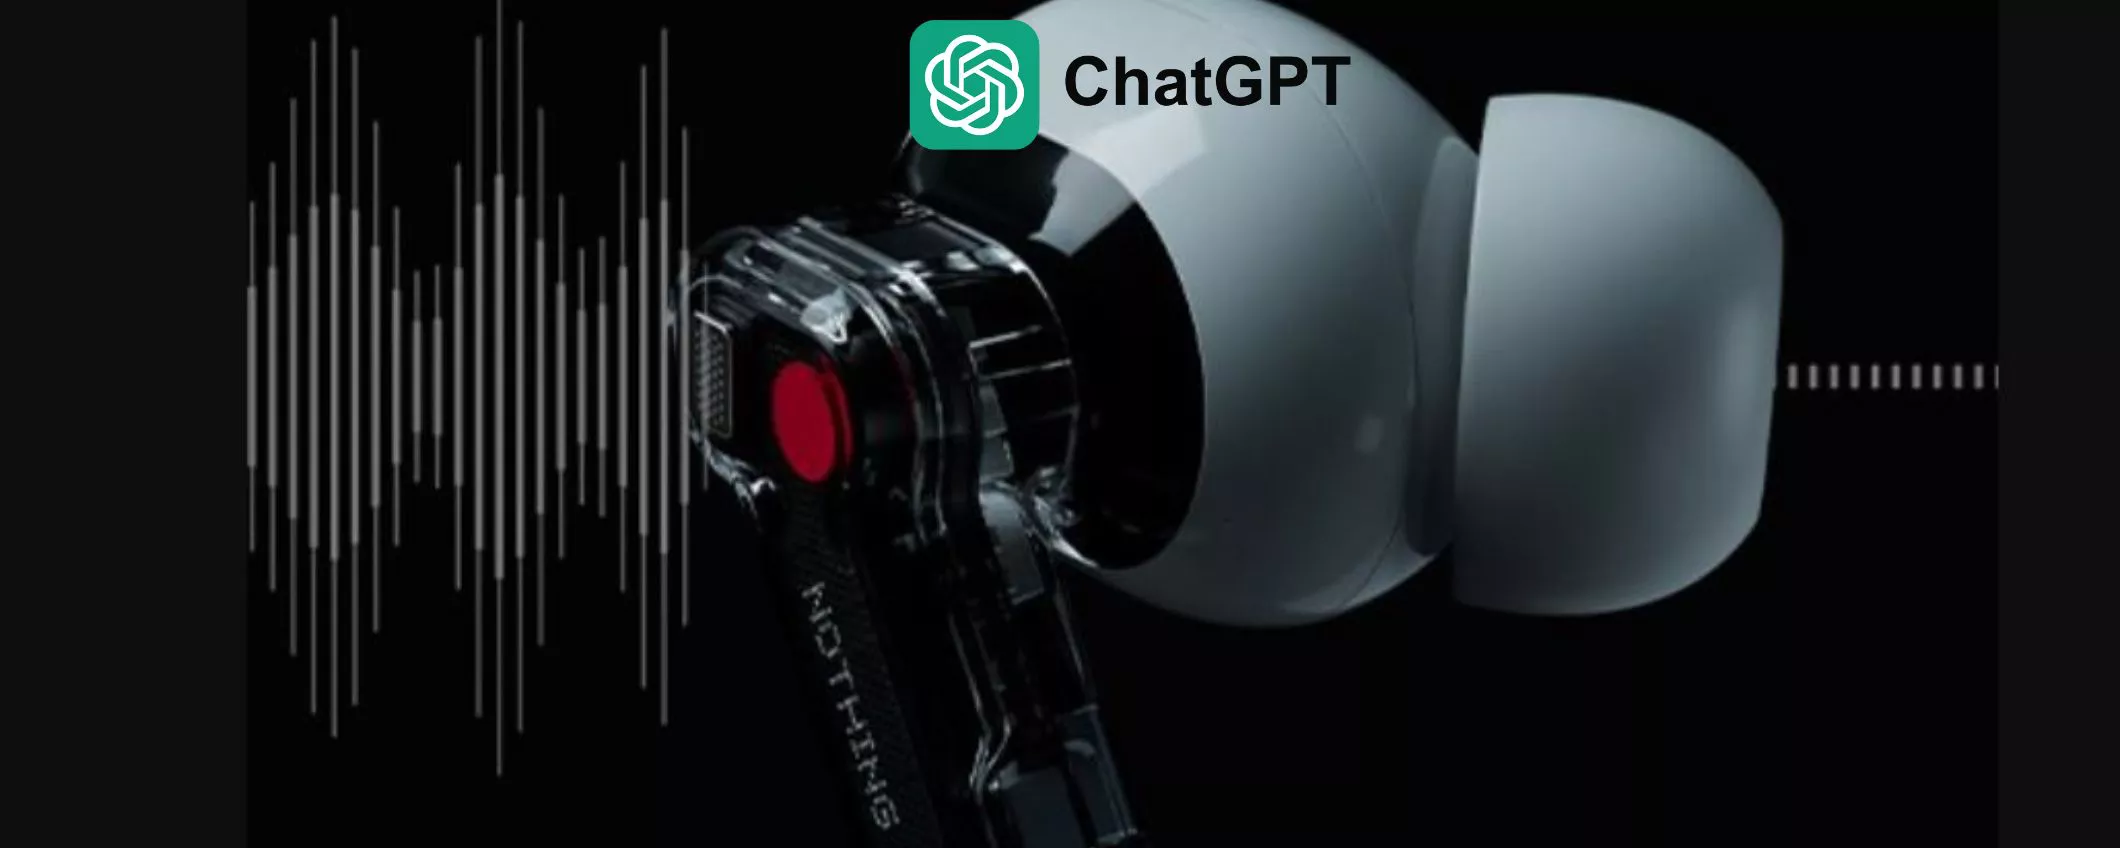 ChatGPT integrata in tutti gli auricolari Nothing e CMF dal 21 maggio